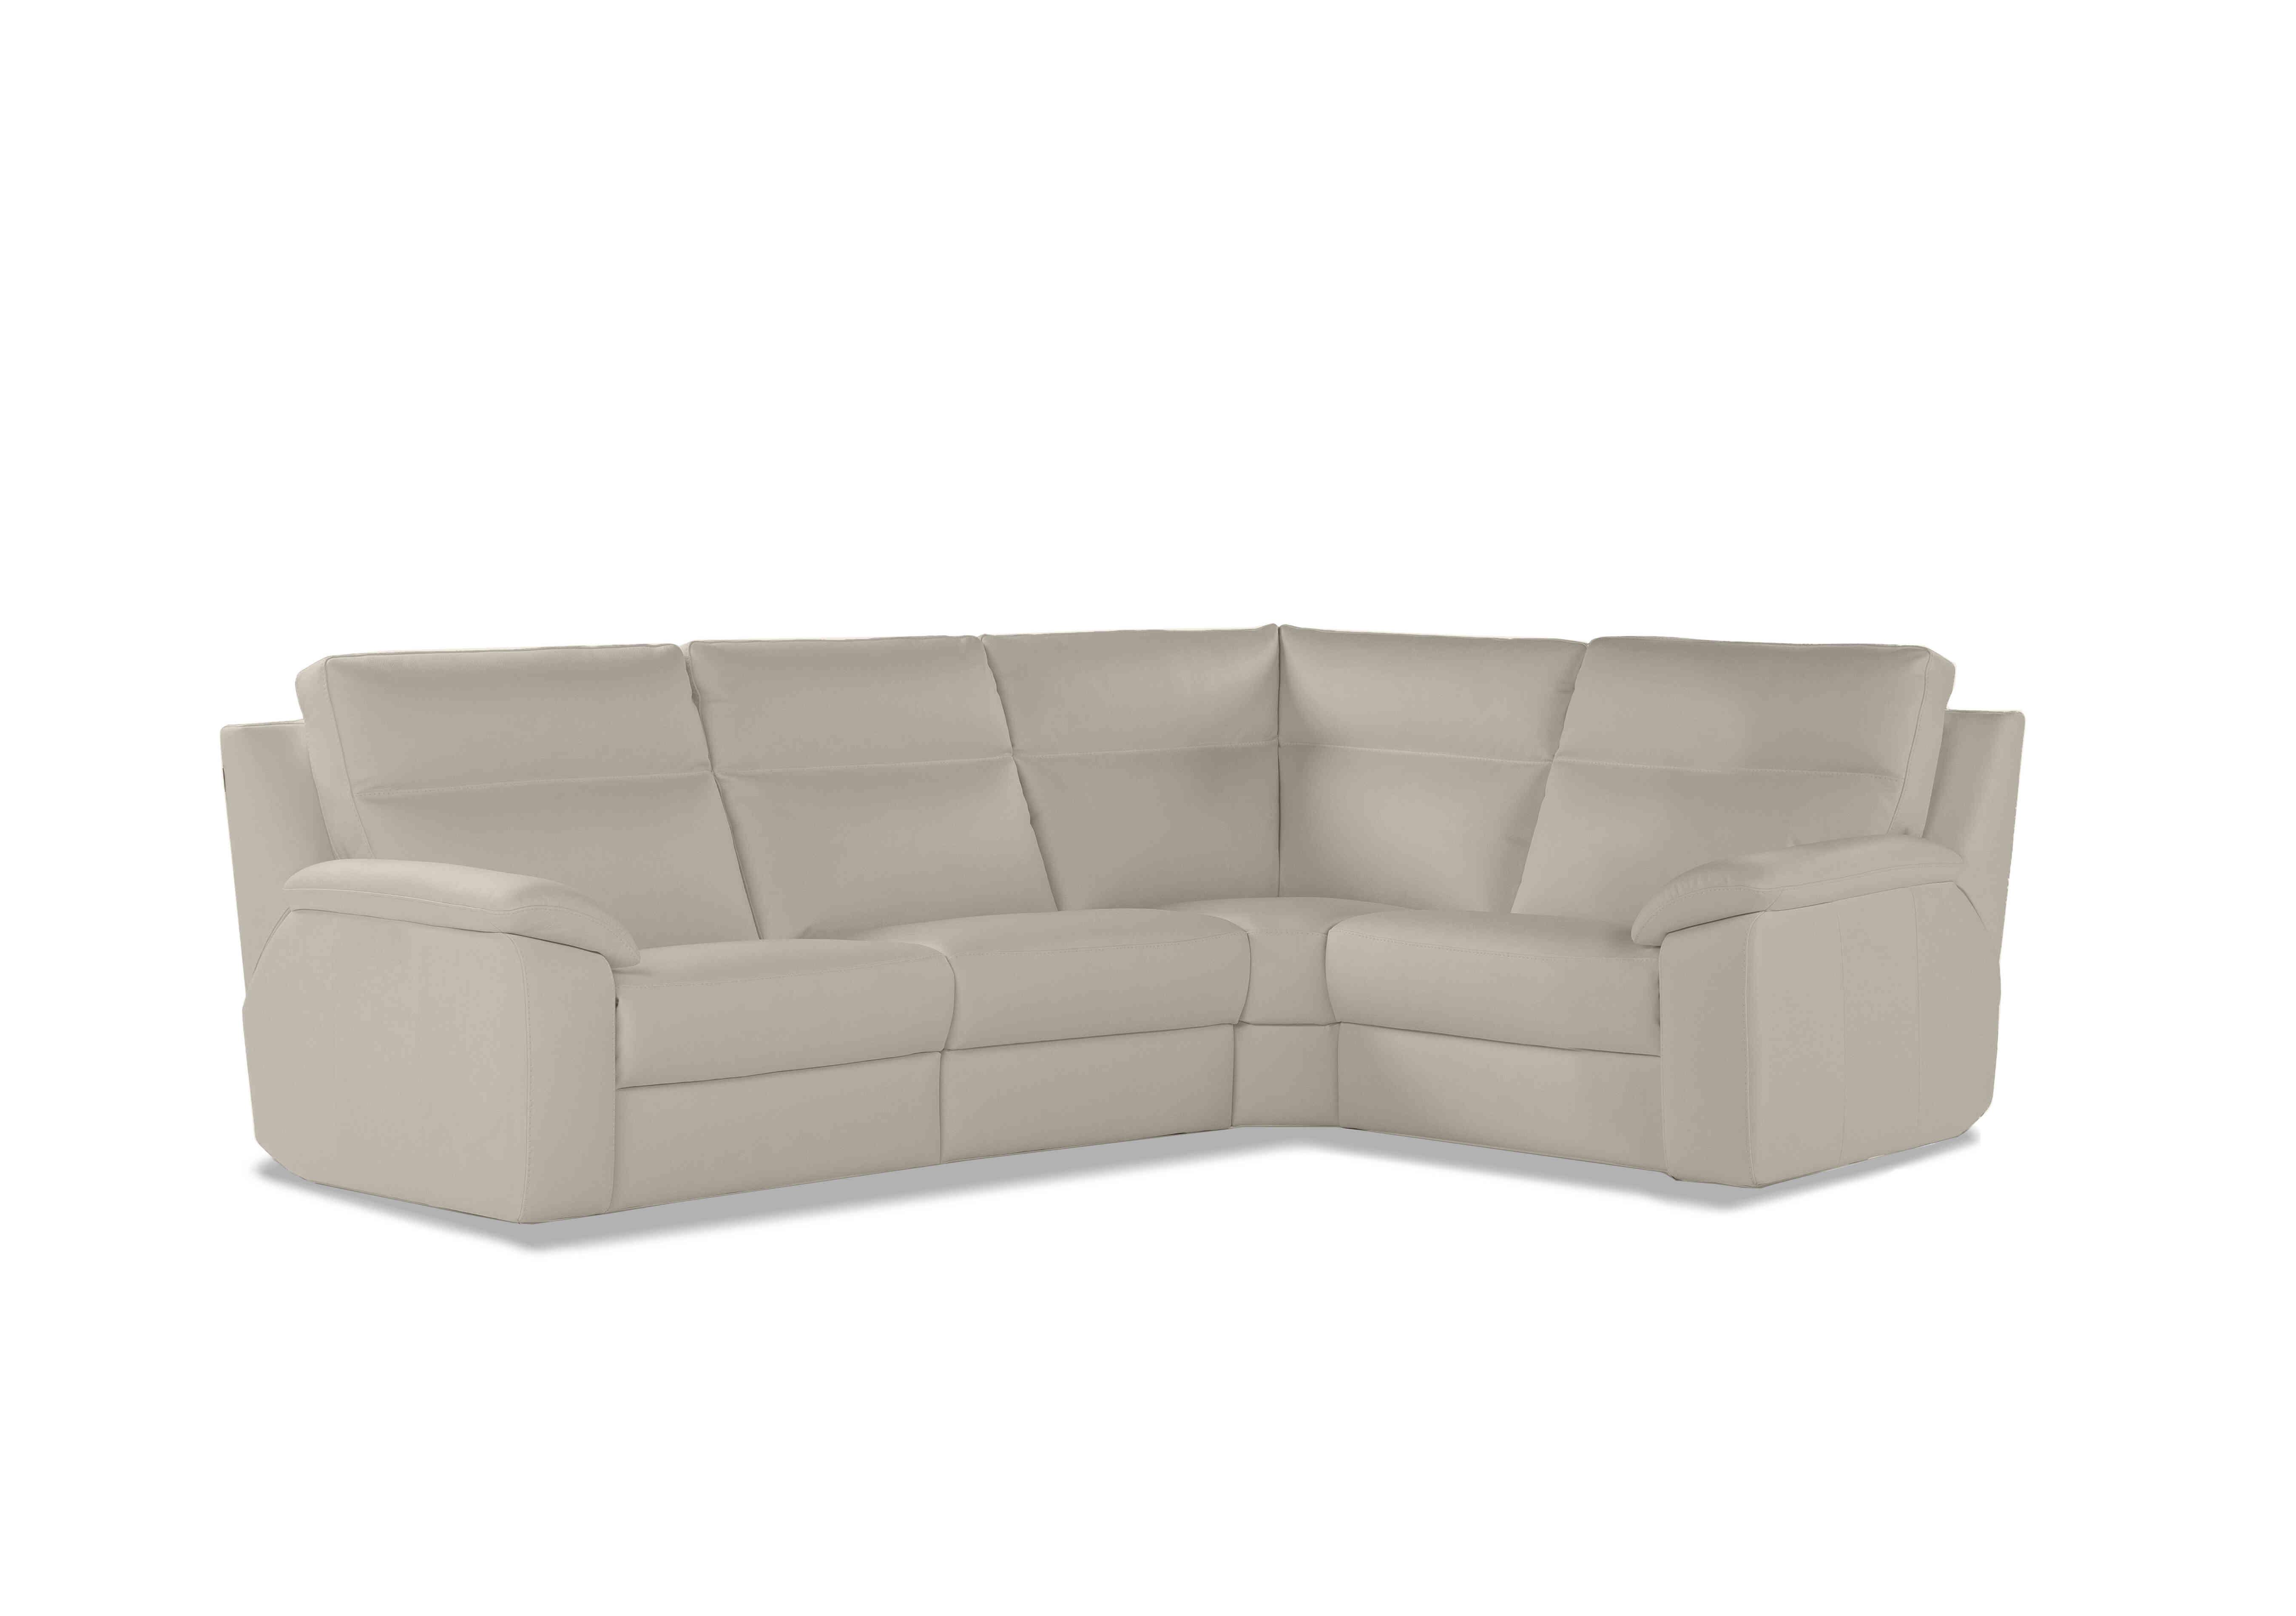 Pepino Small Leather Corner Sofa in Torello 371 Ice on Furniture Village